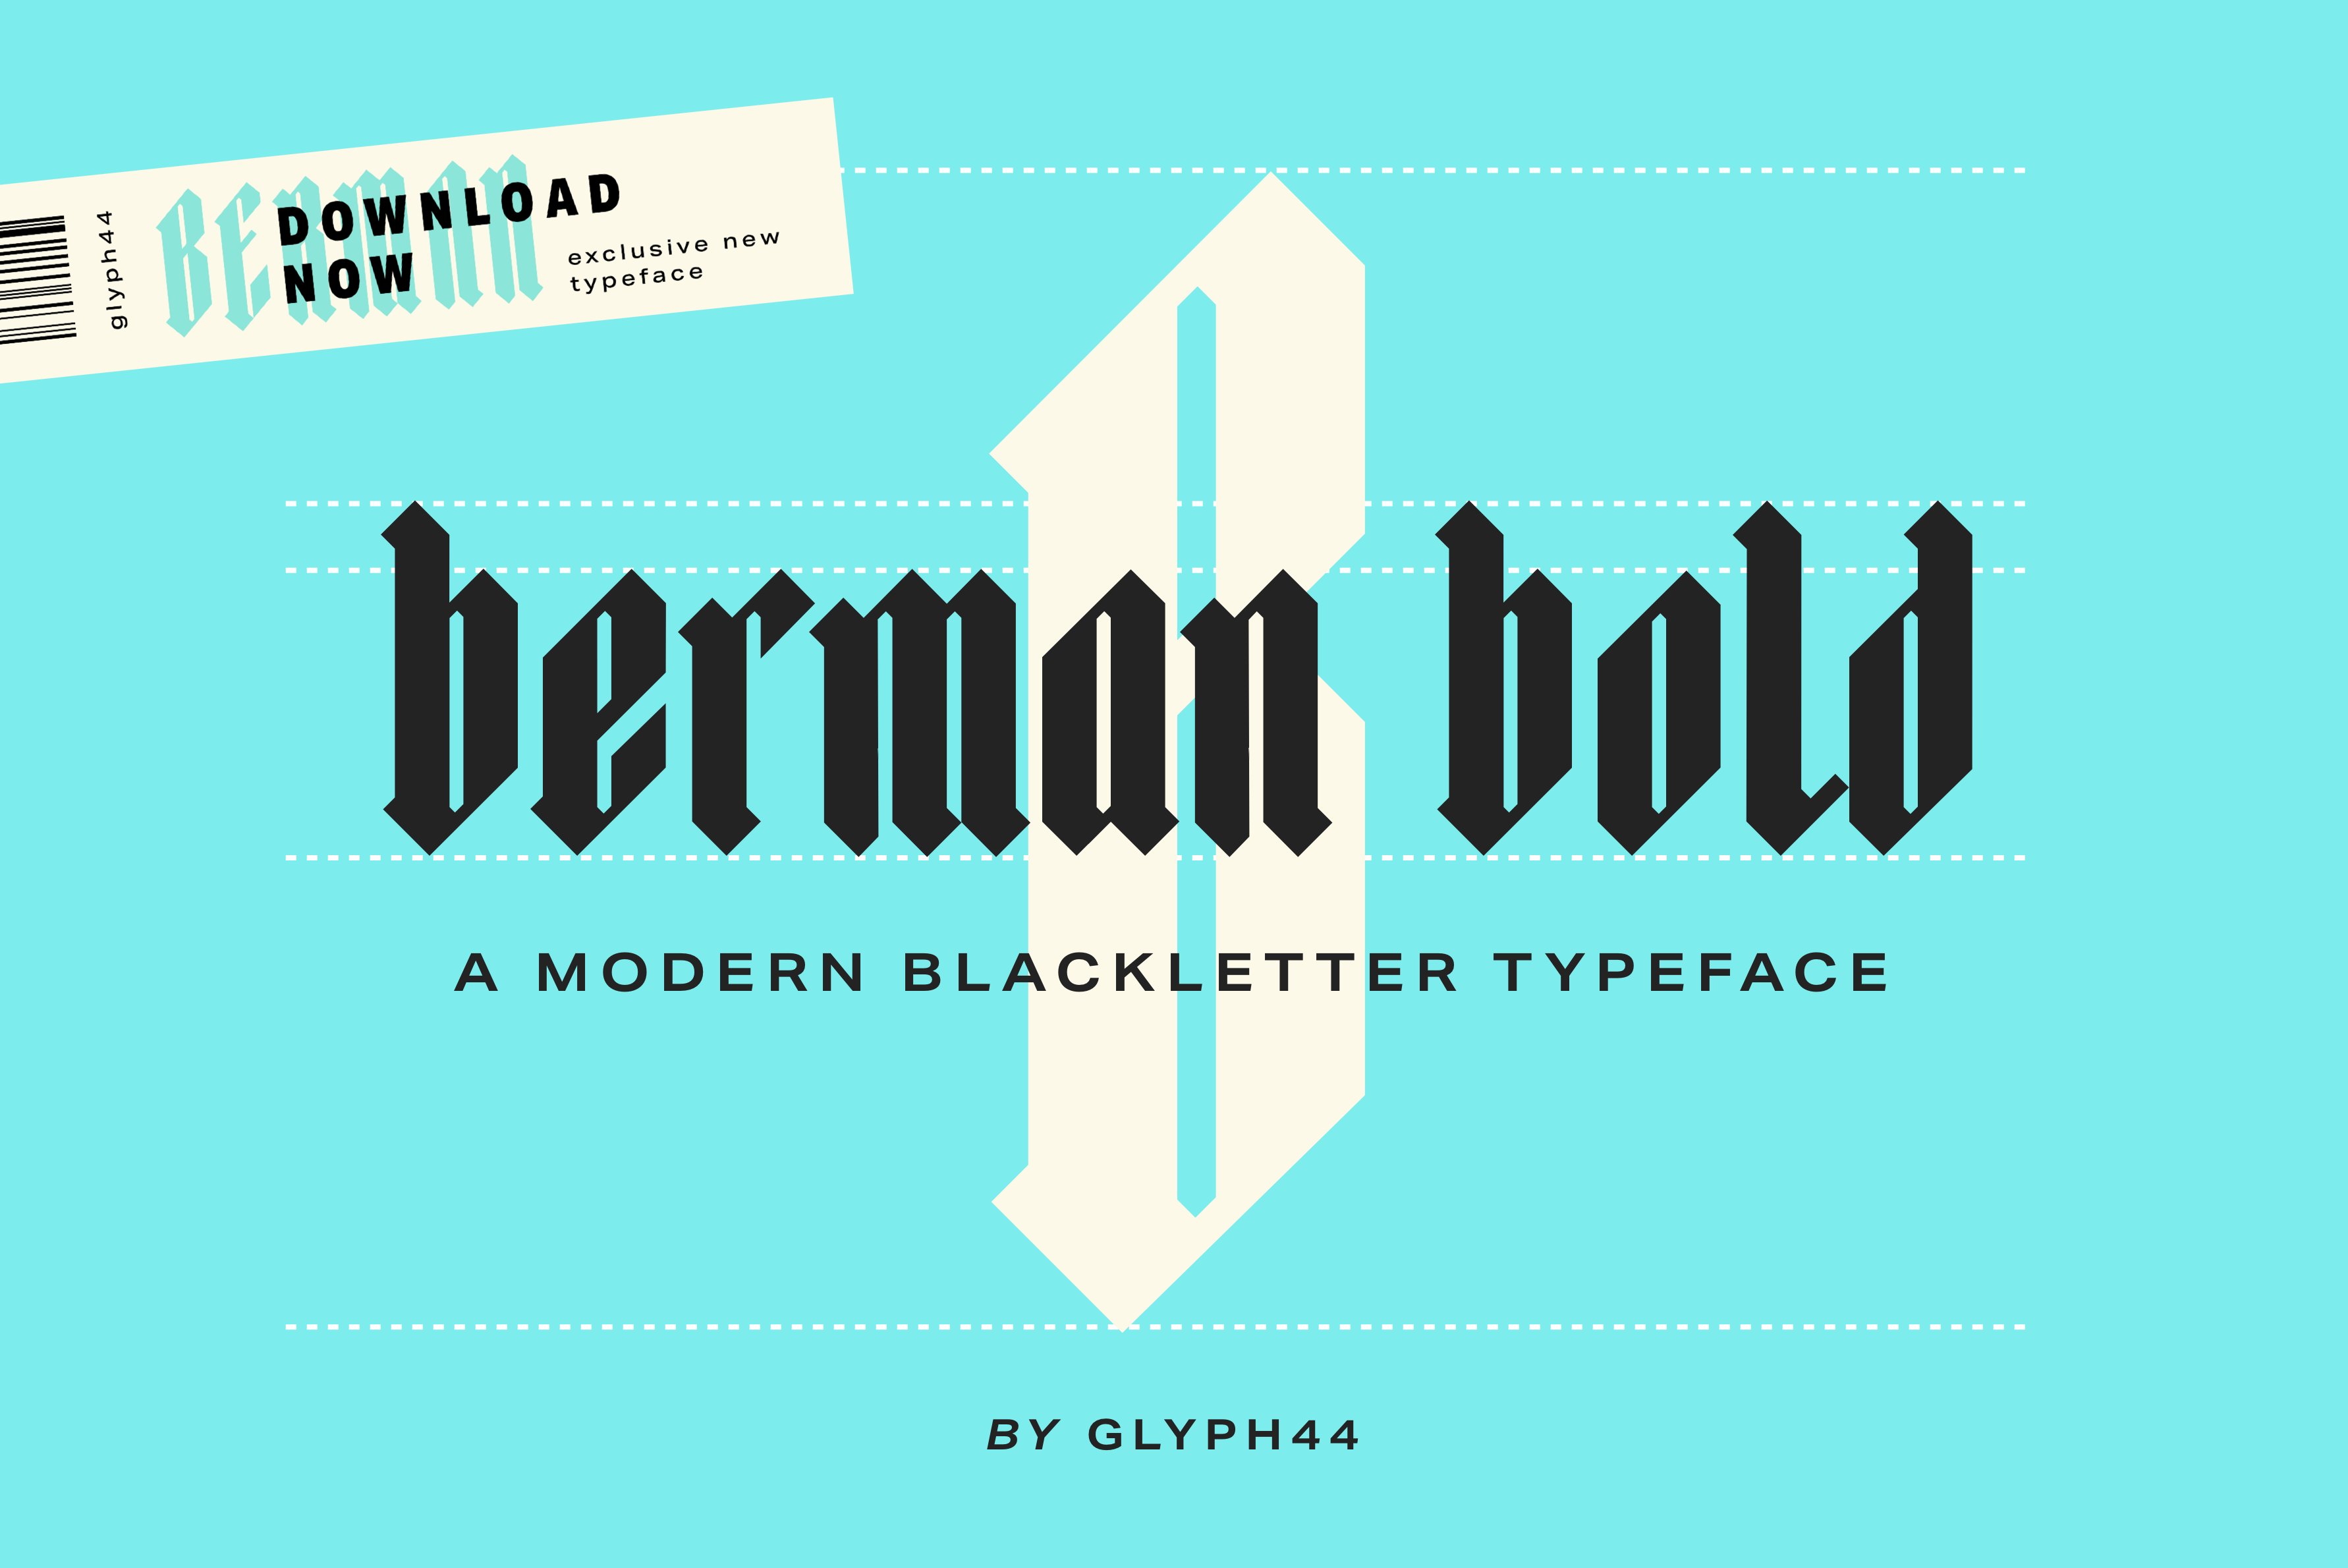 Berman Bold | Blackletter Font cover image.